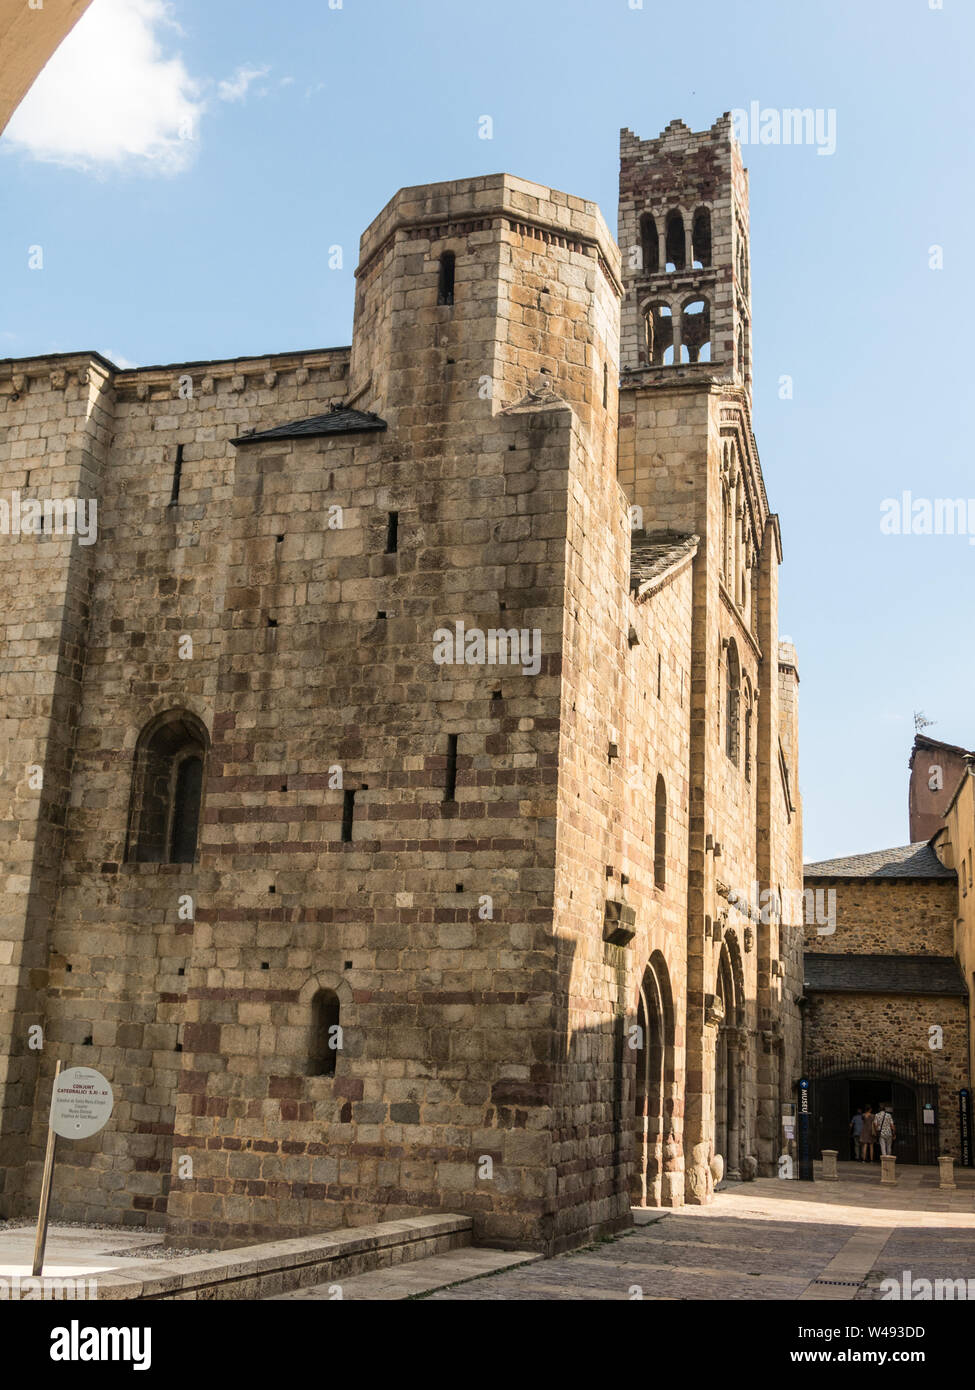 La Cathédrale de Santa María de Urgel est de style roman dans le style et date du 12ème siècle. Seo de Urgel. La Catalogne, Espagne. L'Europe Banque D'Images